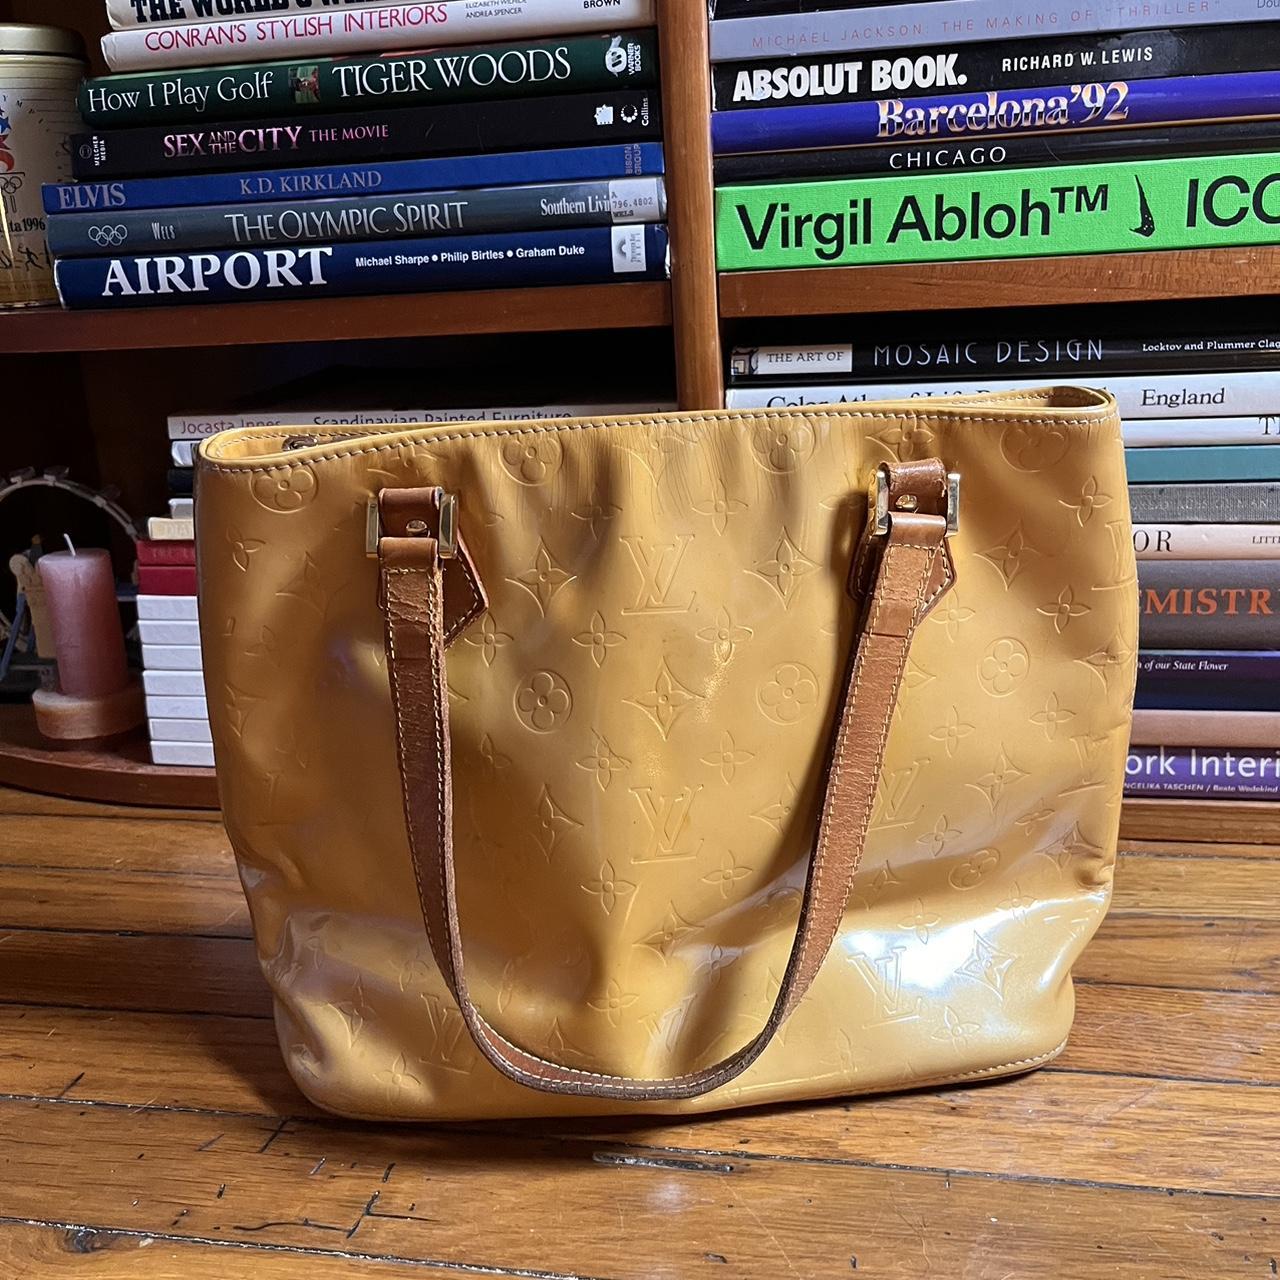 Louis Vuitton Houston Yellow Monogram Patent Leather Tote Bag